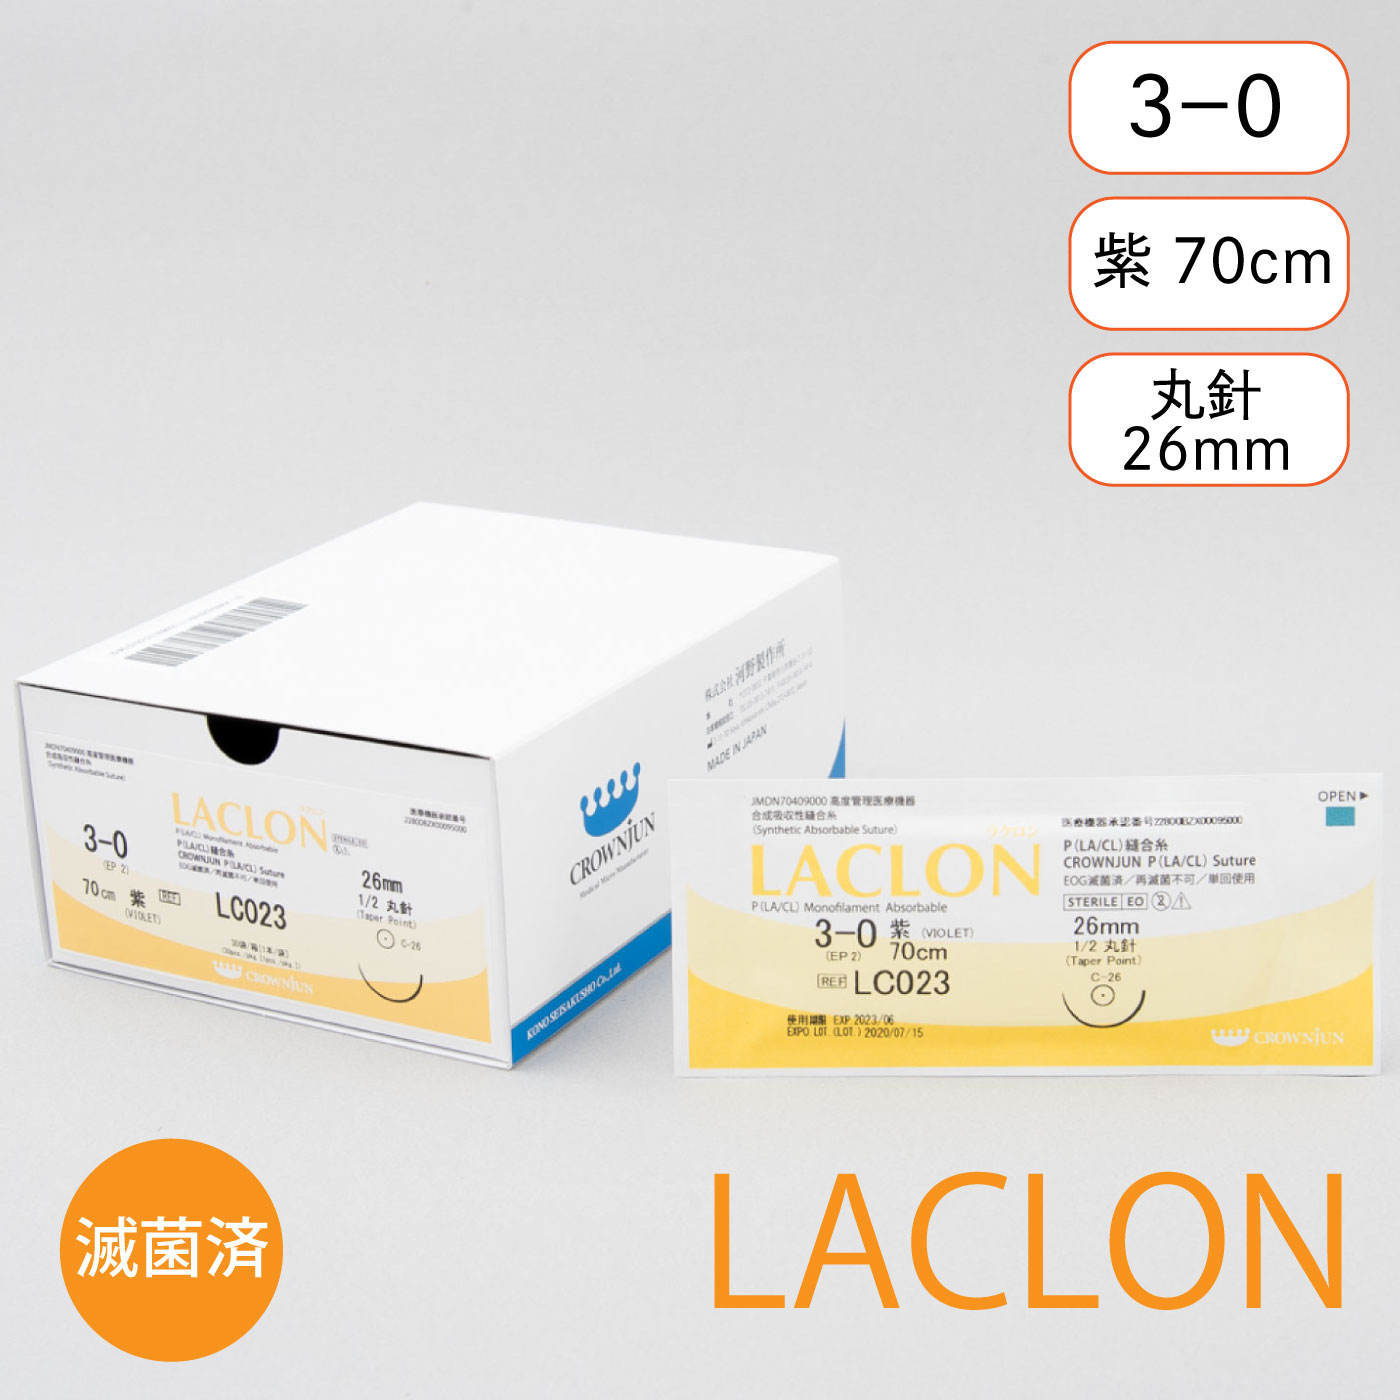 針付ラクロン C-26mm/3-0/70cm/紫/モノフィラメント吸収糸【LC023】